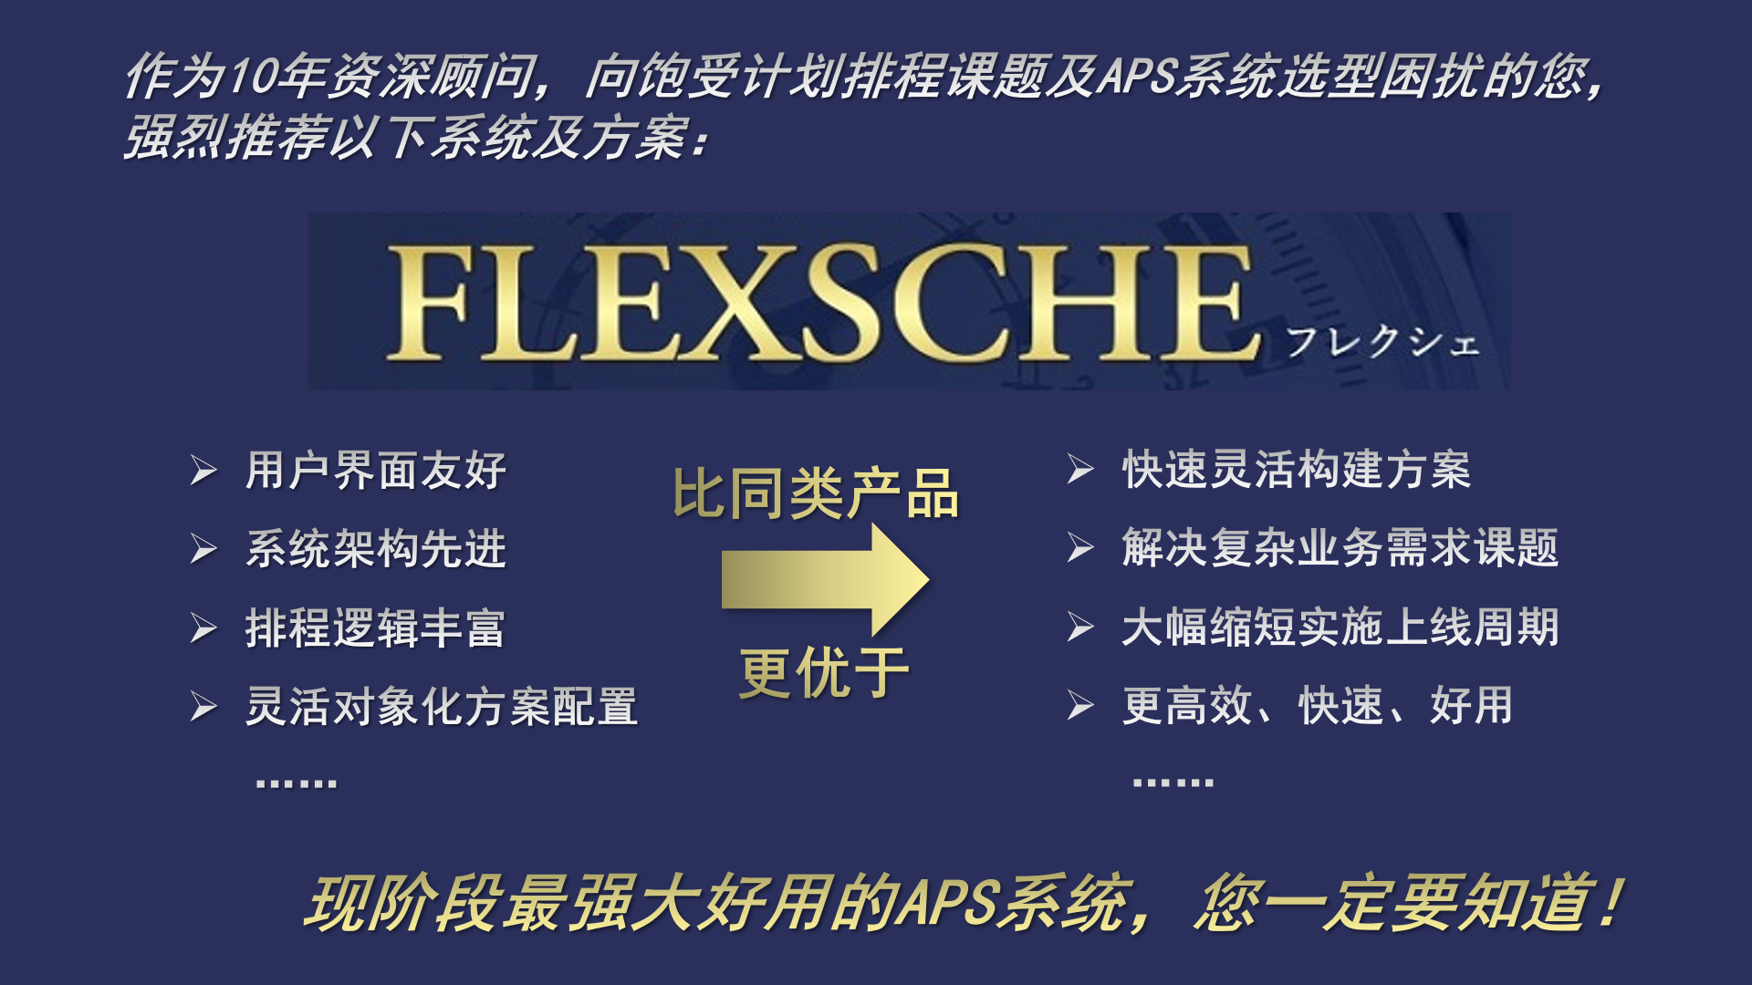 APS系统-FLEXSCHE系统的全方面优势